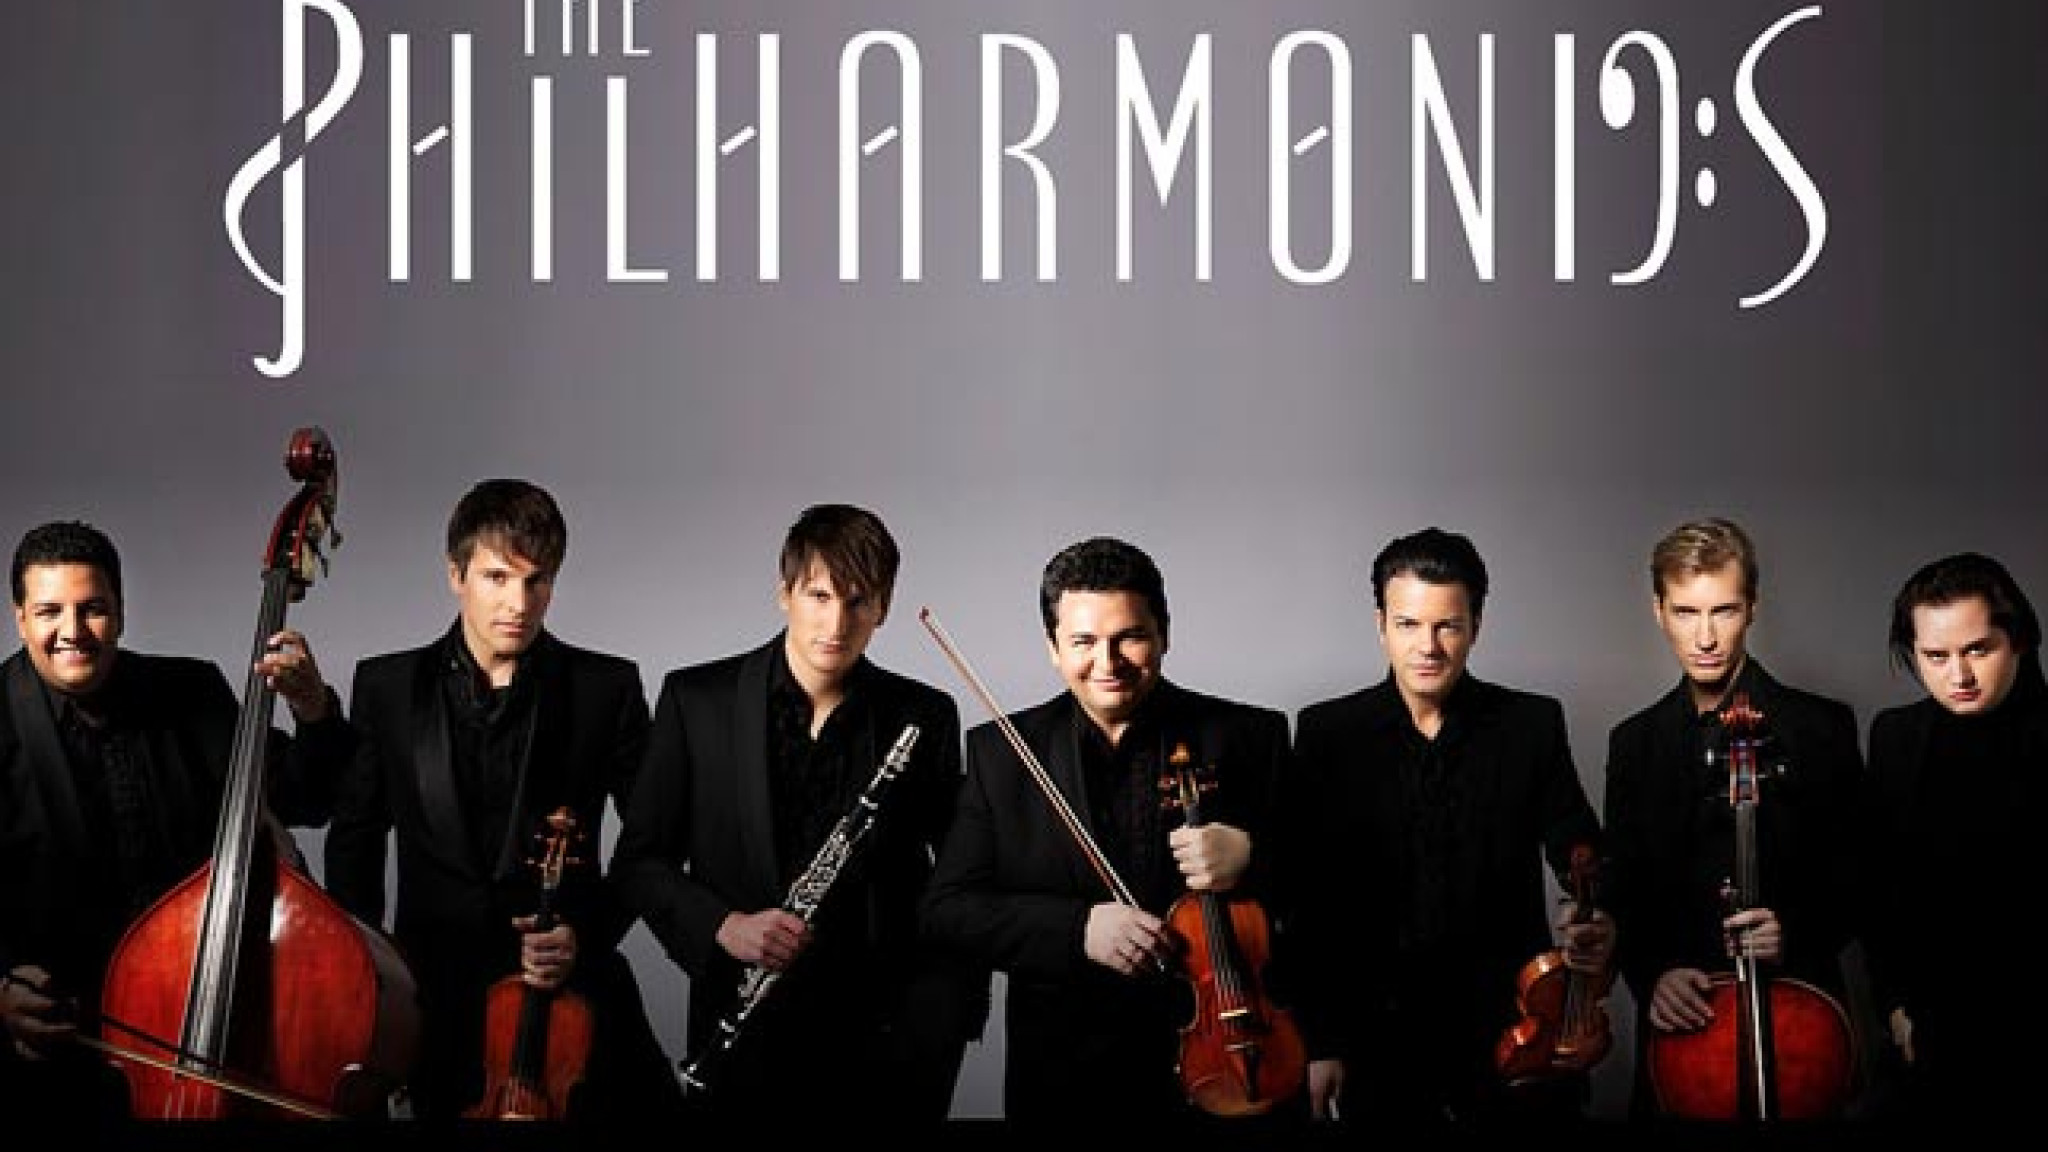 The Philharmonics